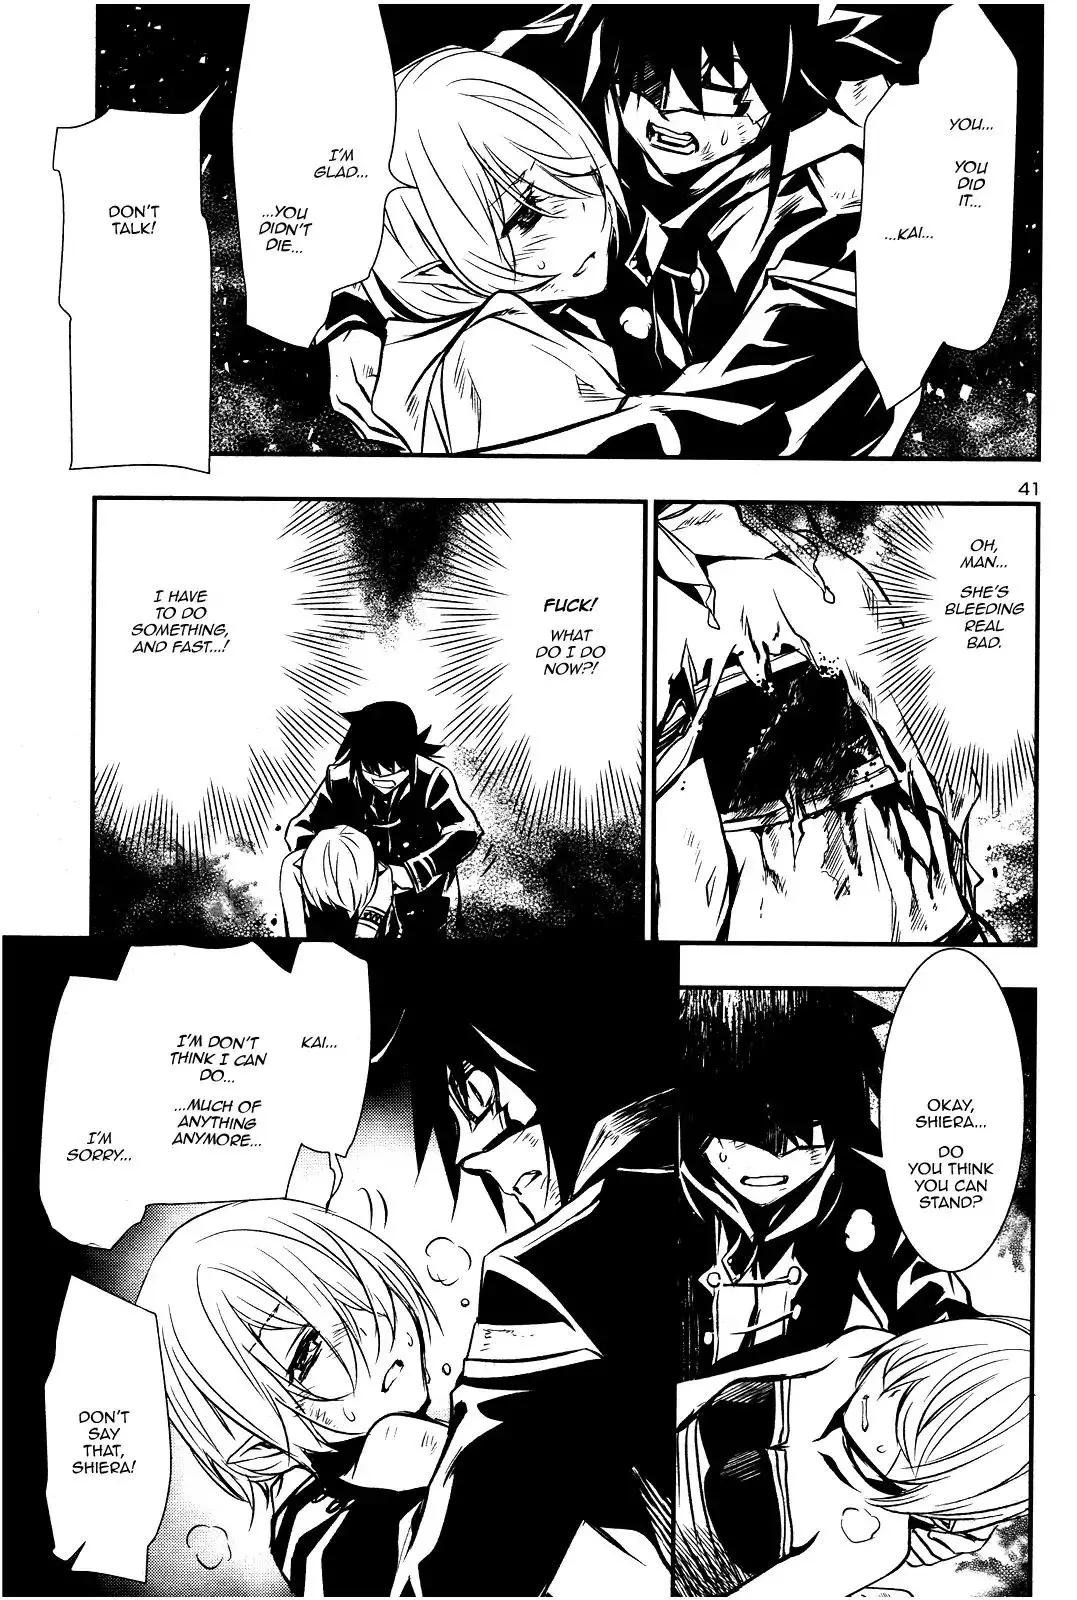 Shinju no Nectar - 17 page 39